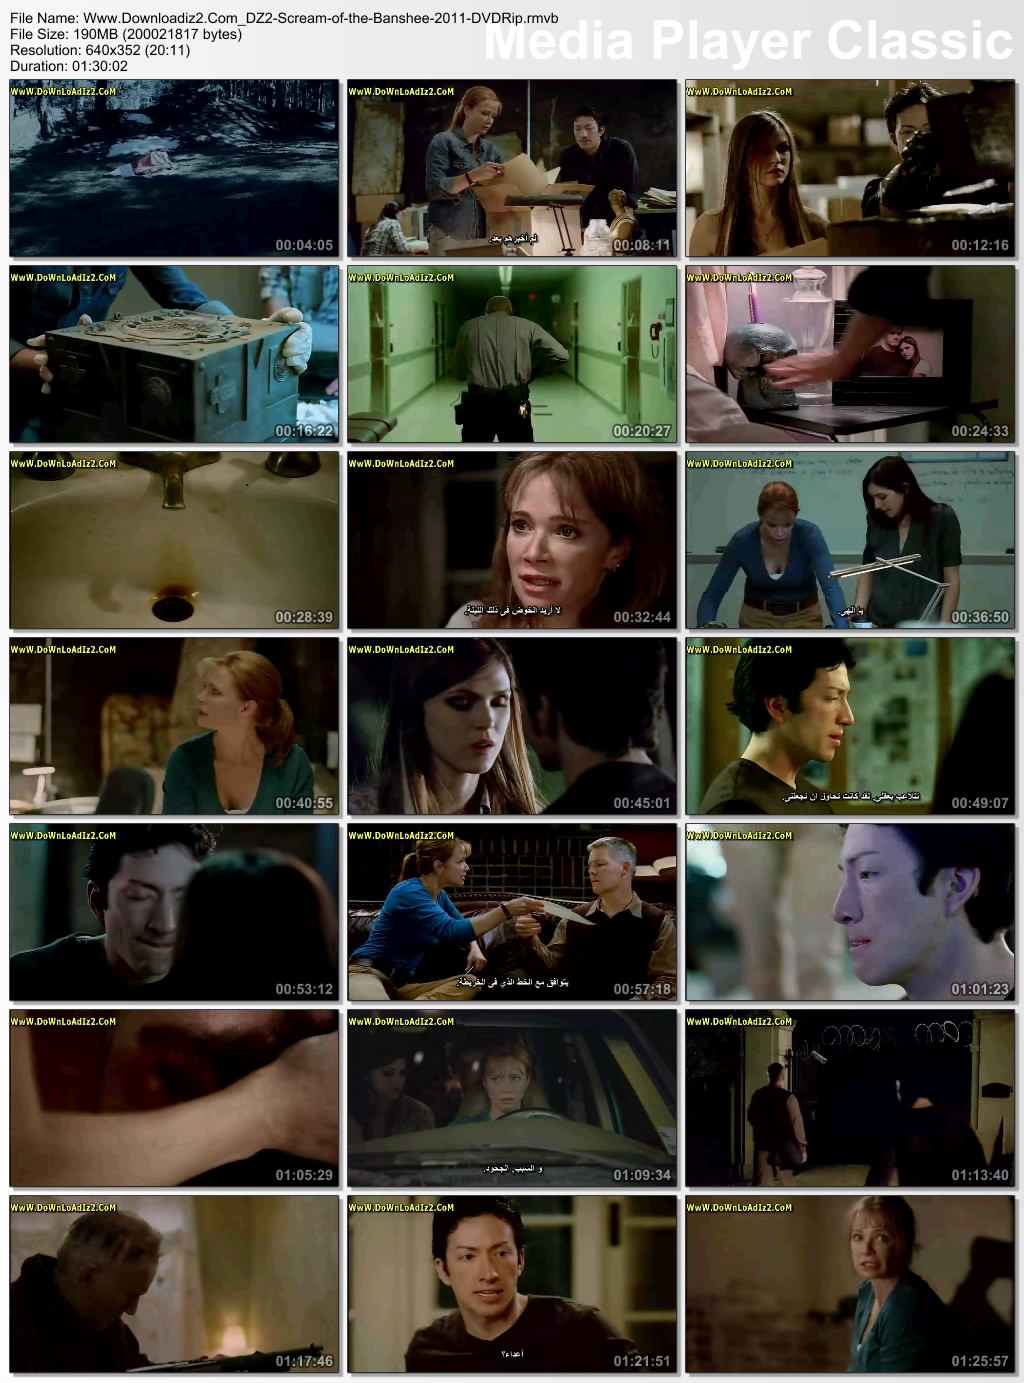 فيلم الرعب Scream of the Banshee 2011 DVDRip مترجم و للكبار فقط 48913630673289428983